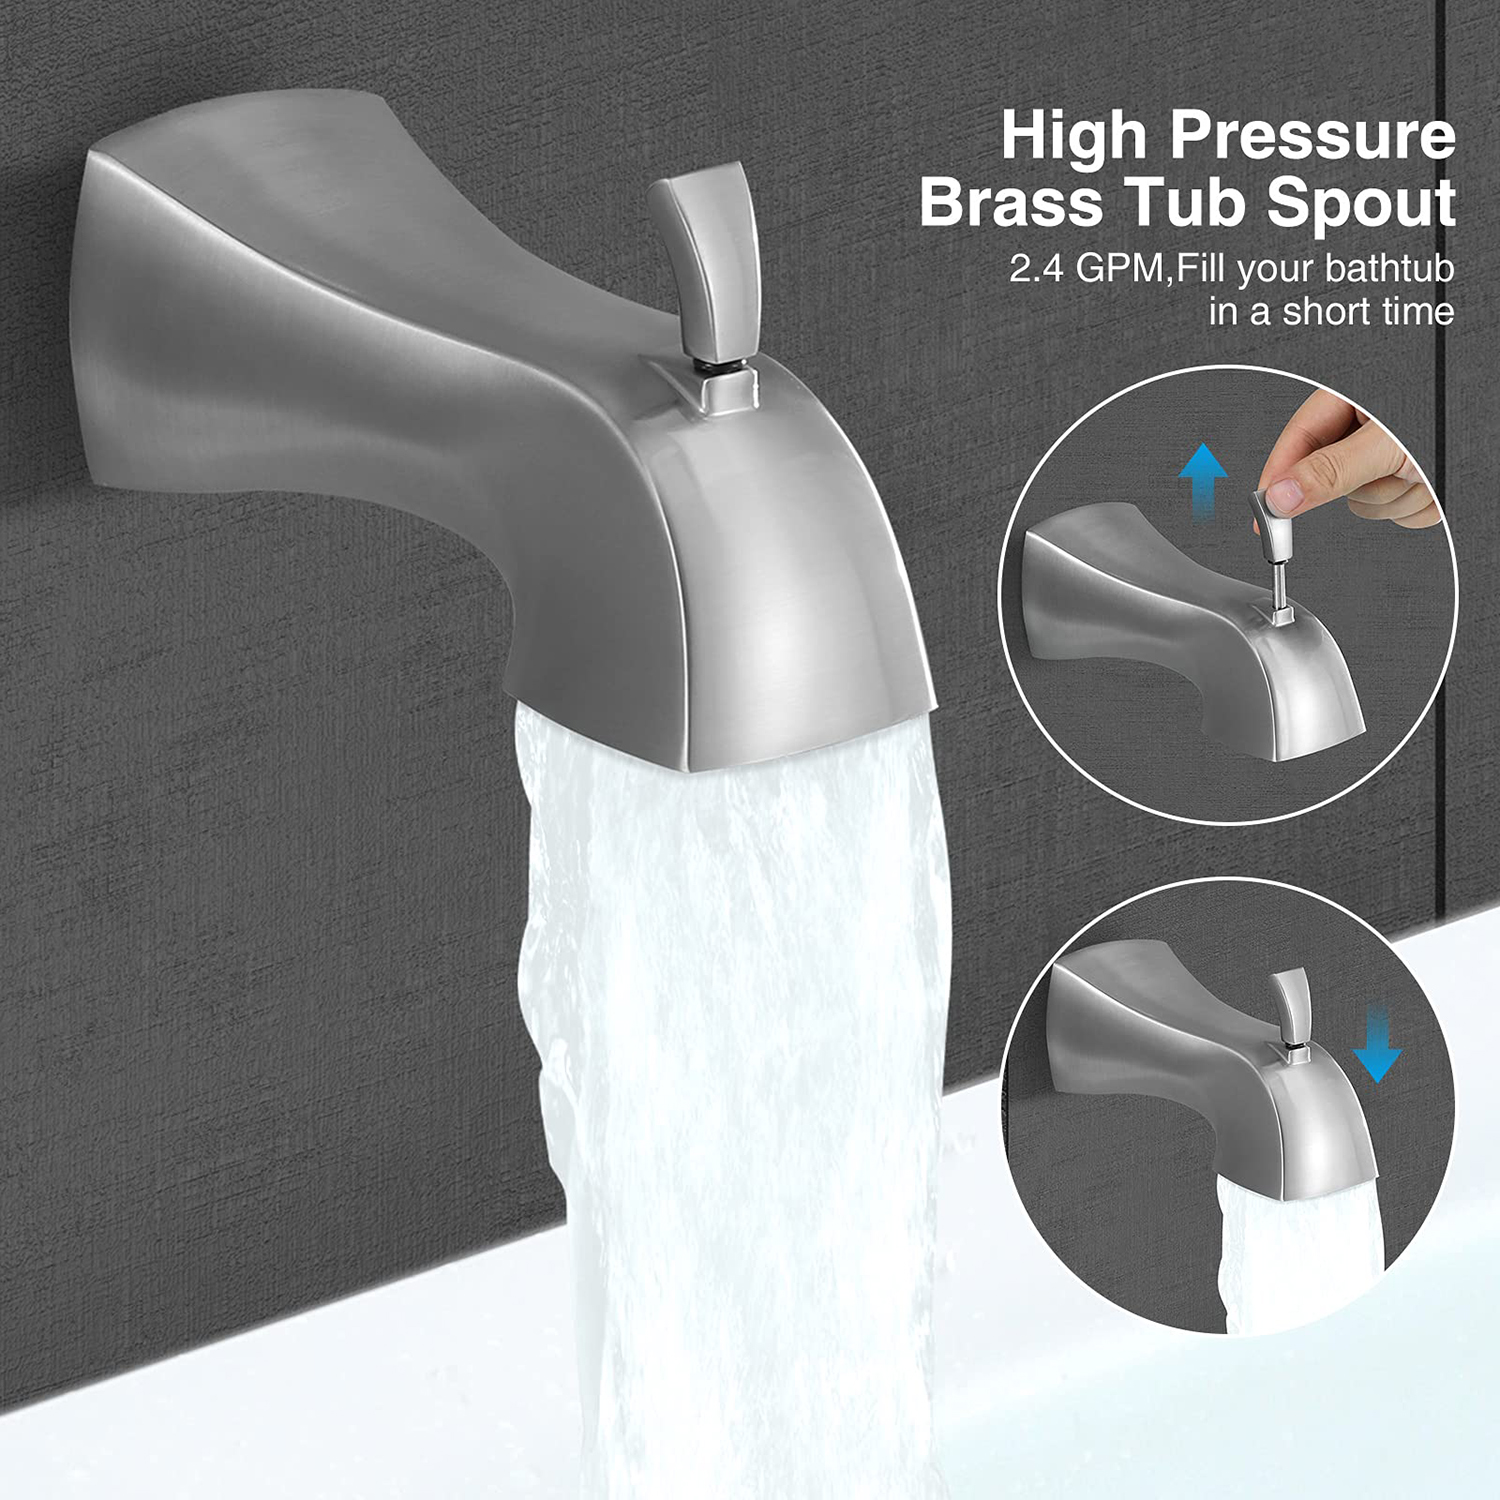 Juego de ducha de cromo pulido oculto para baño Aquacubic, sistema de ducha de alta presión montado en la pared